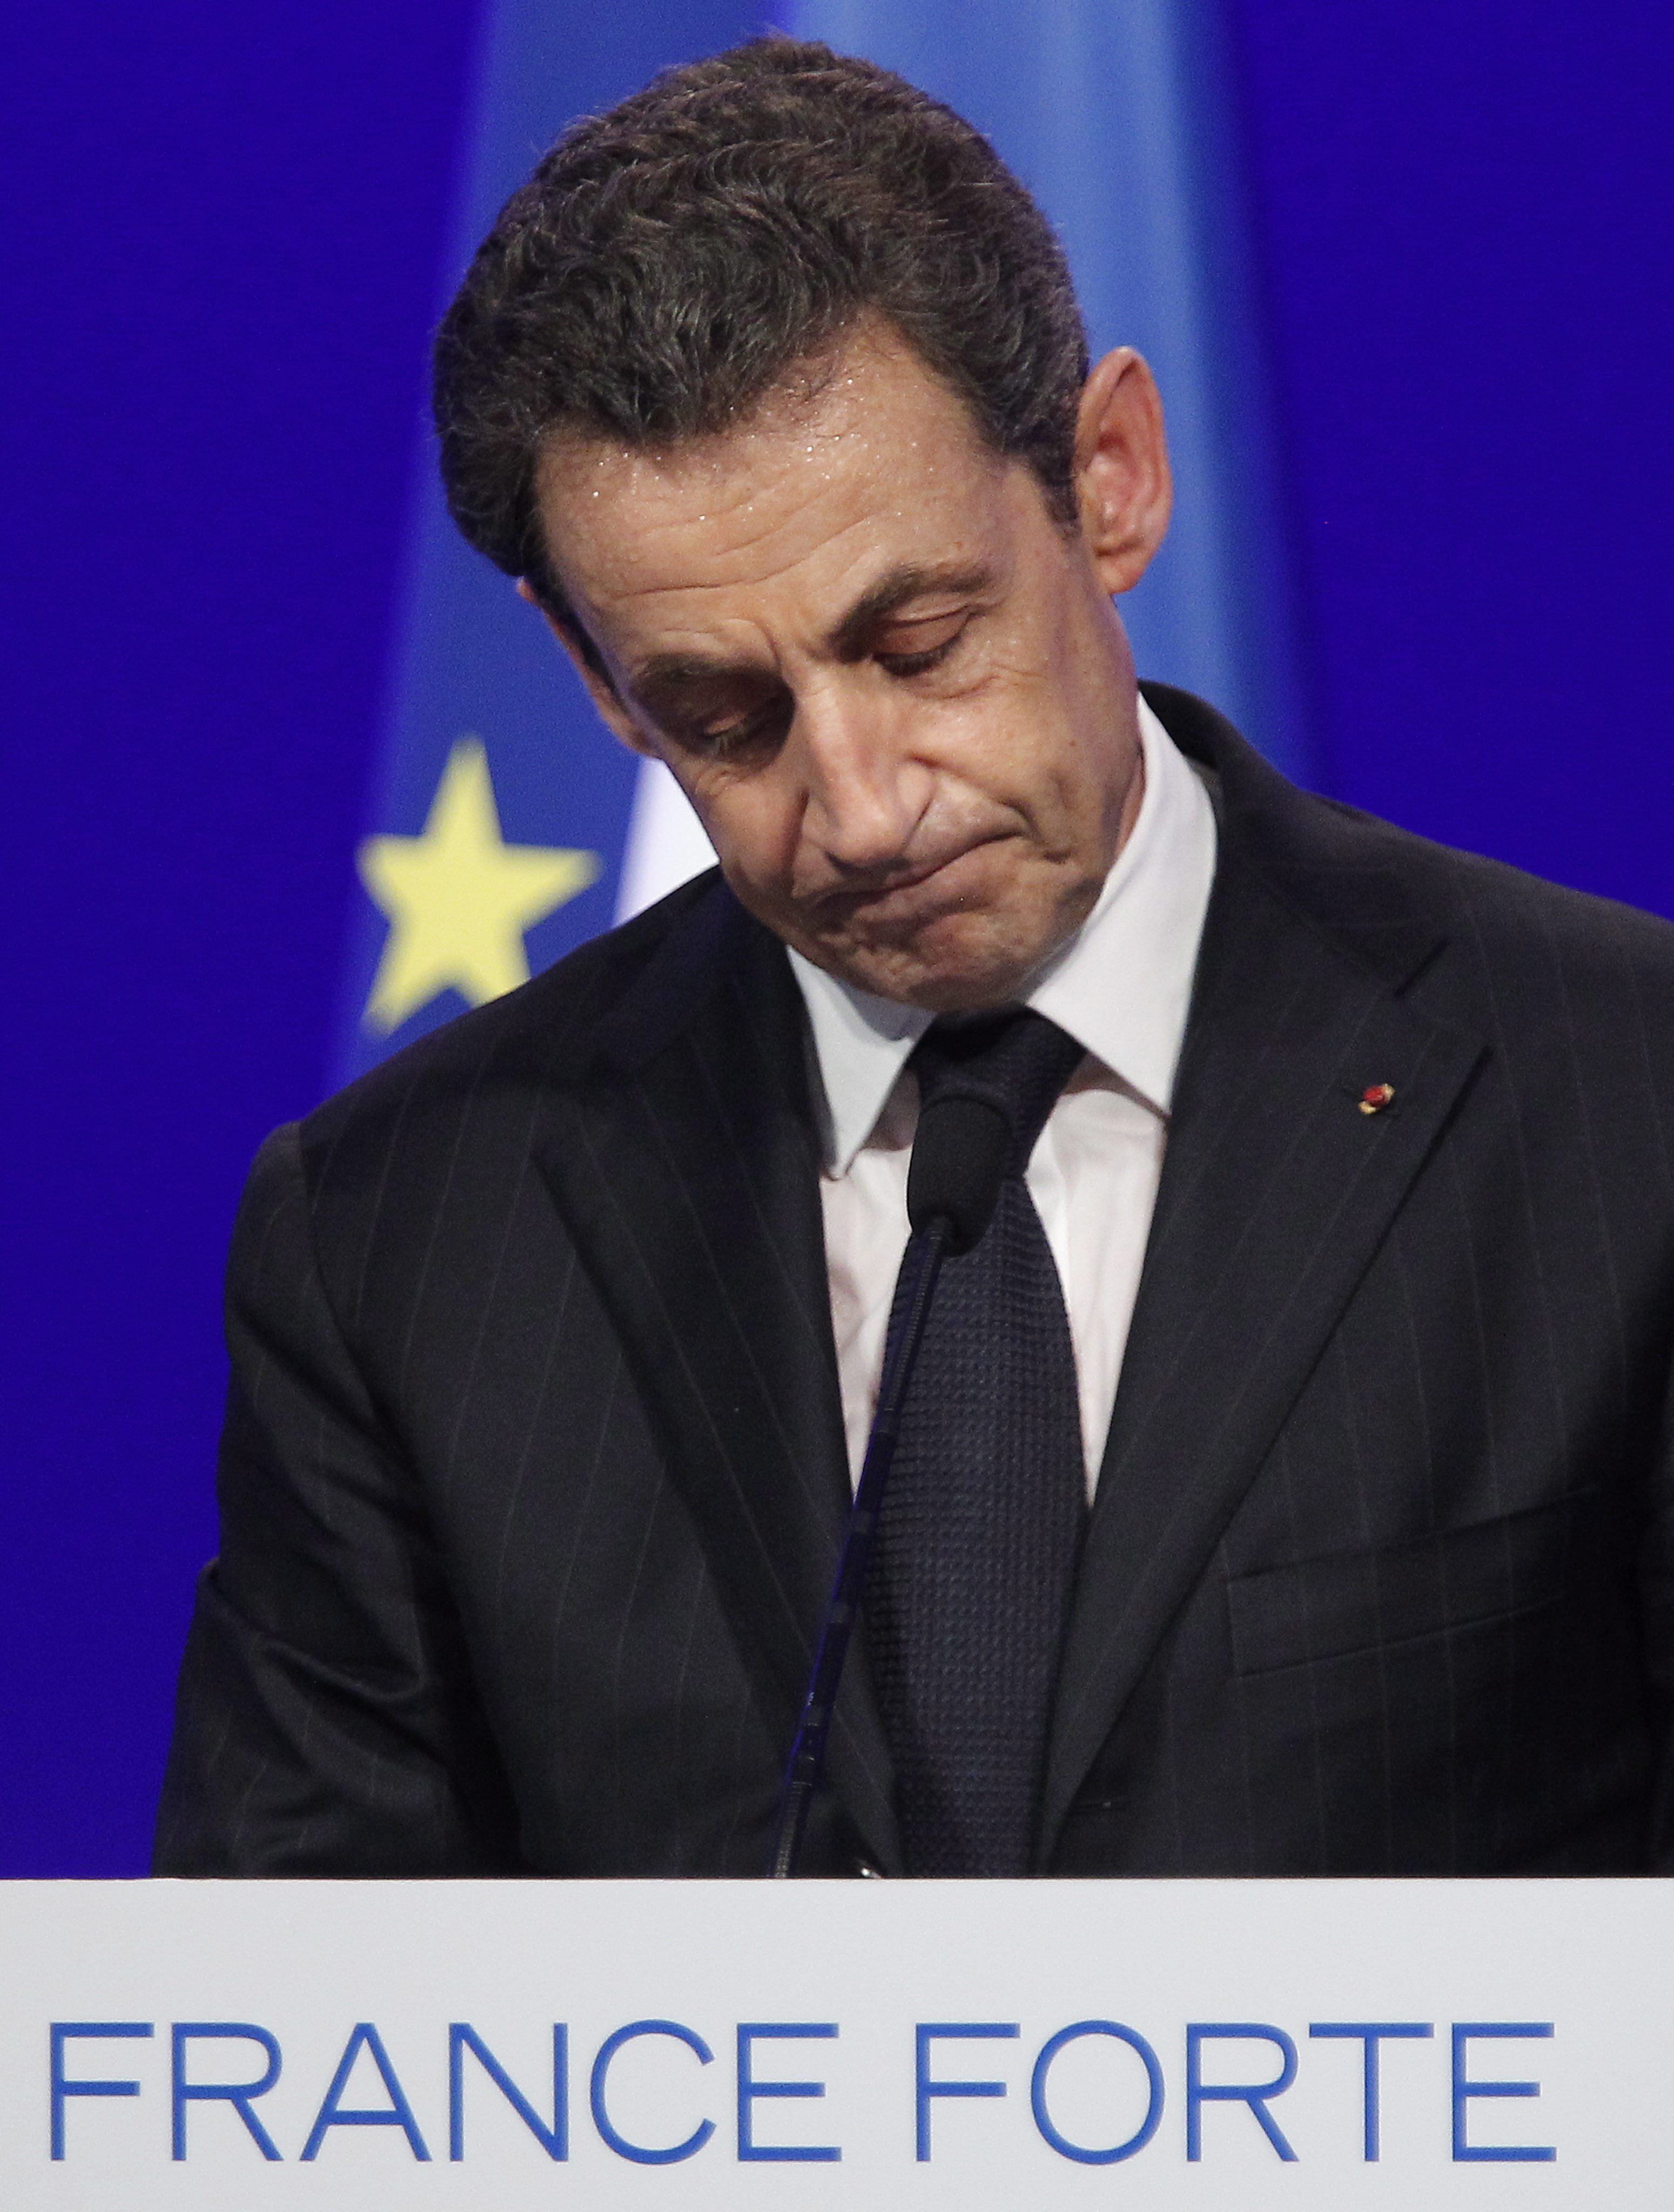 Френският президент Никола Саркози предизвика всеобщо изумление, когато през 2007 г. покани в Париж Кадафи